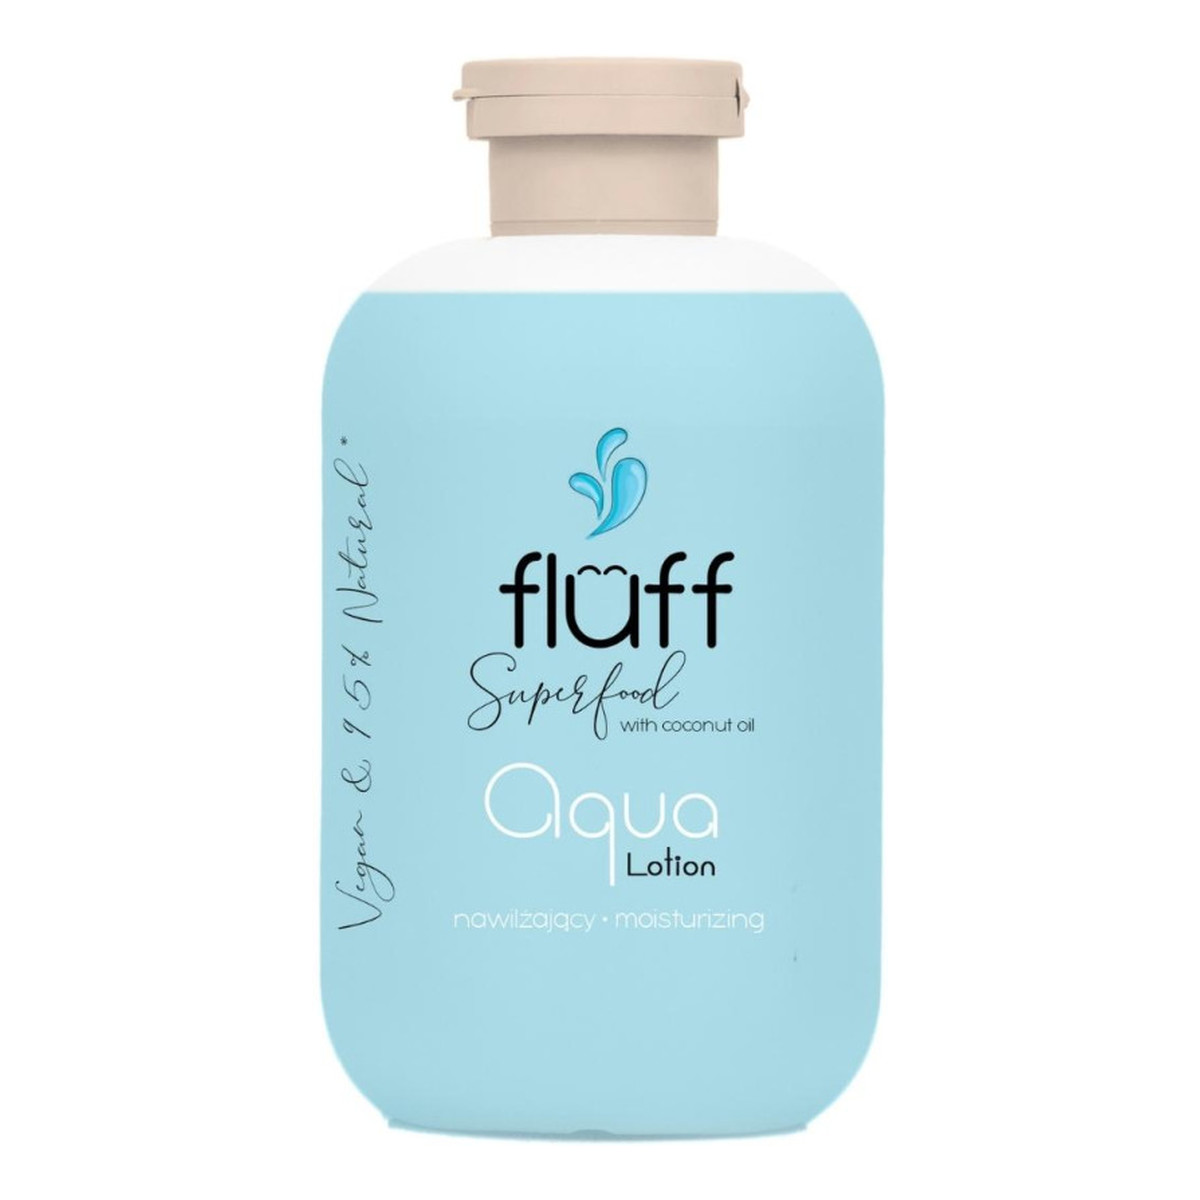 Fluff Aqua Lotion Nawilżający balsam do ciała 300ml